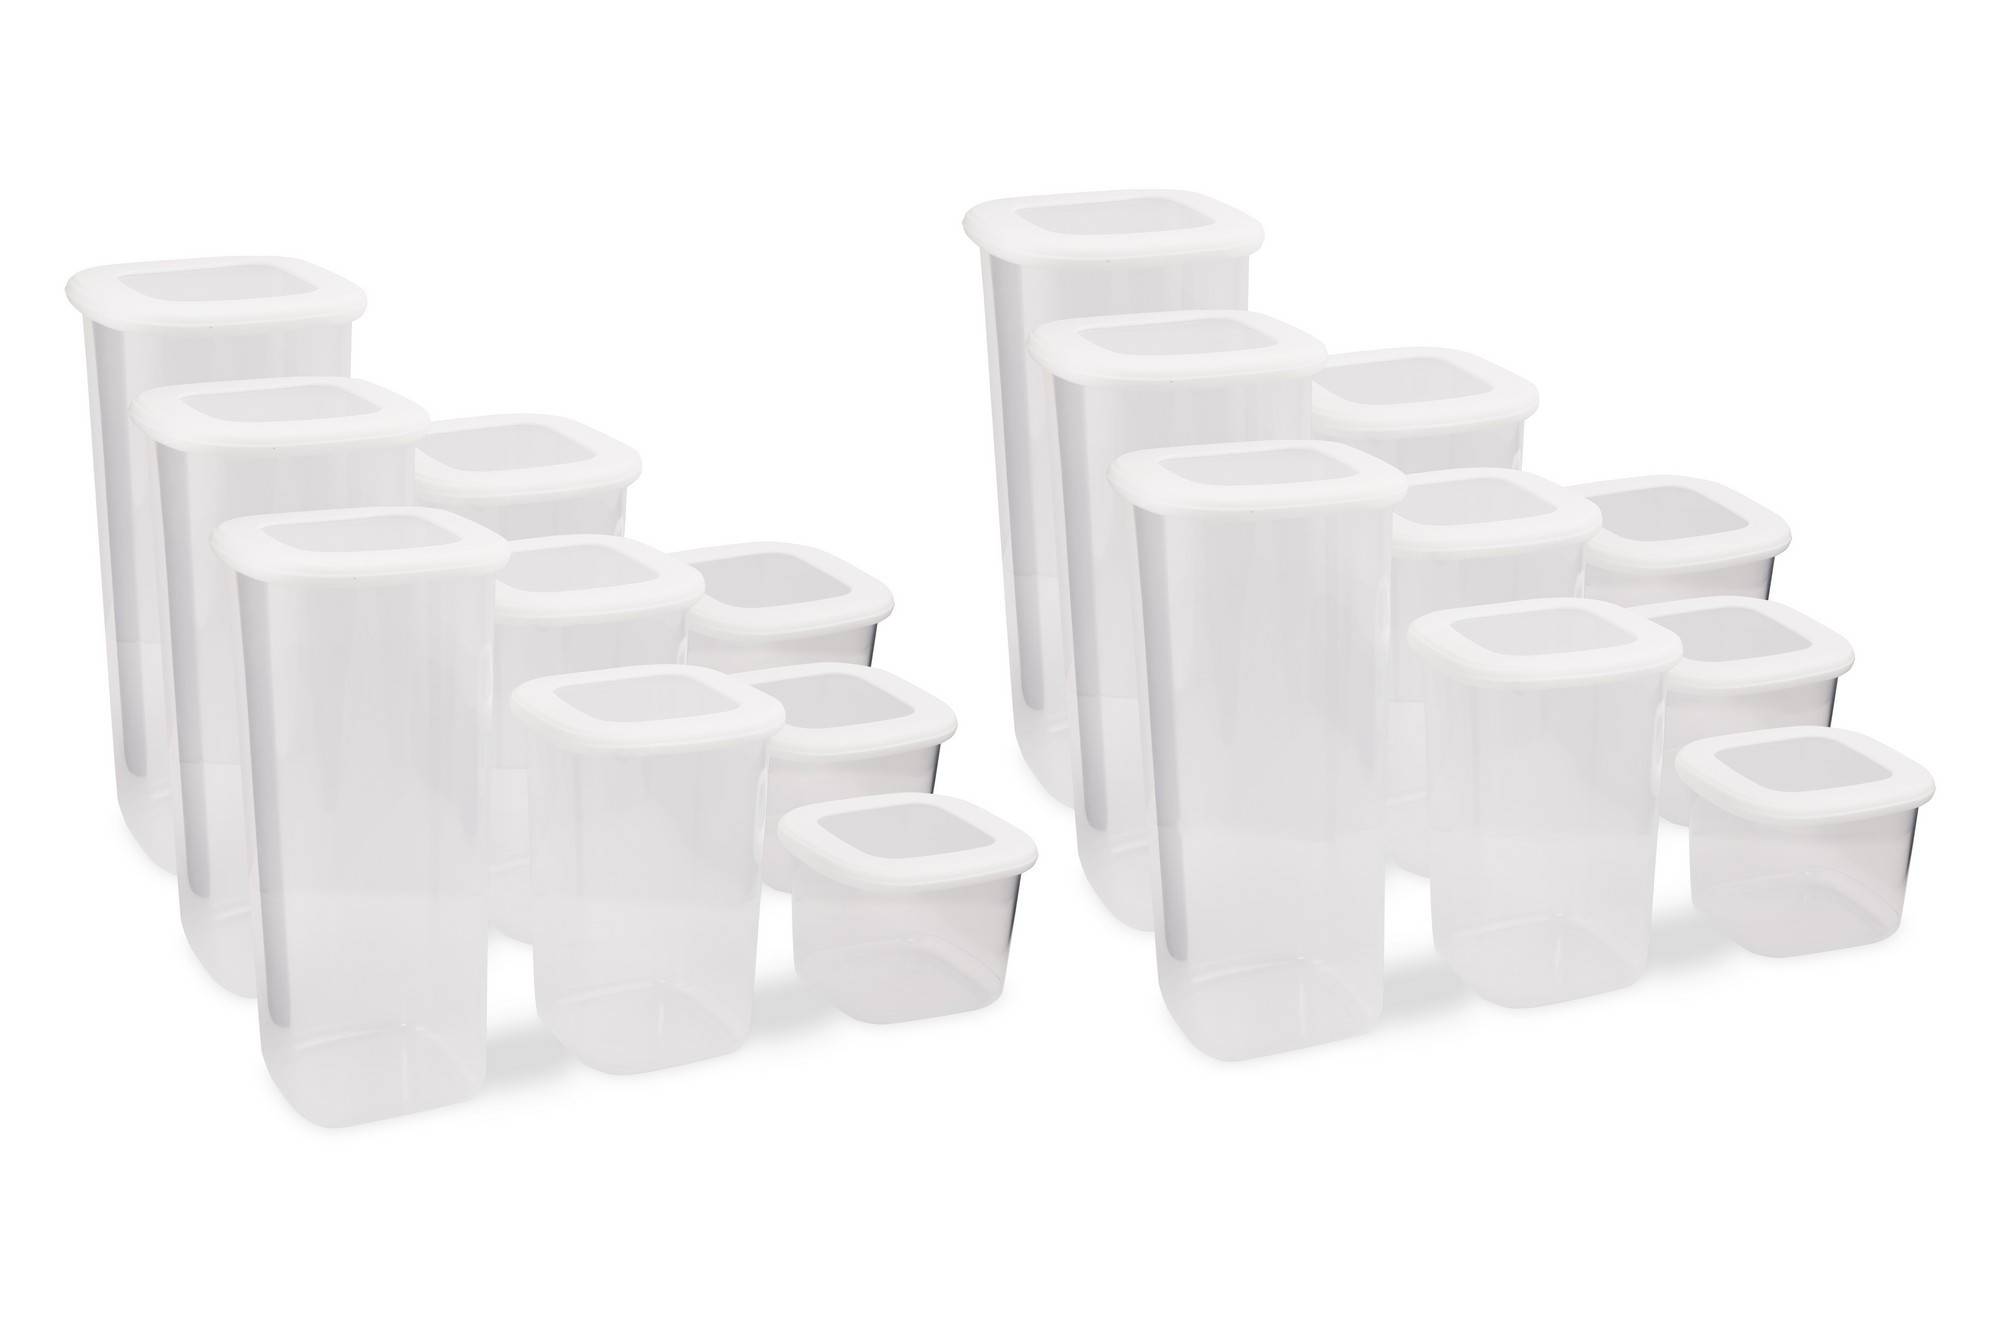 Lote de 12 cajas de almacenaje tridimensionales Vezan Blanco transparente